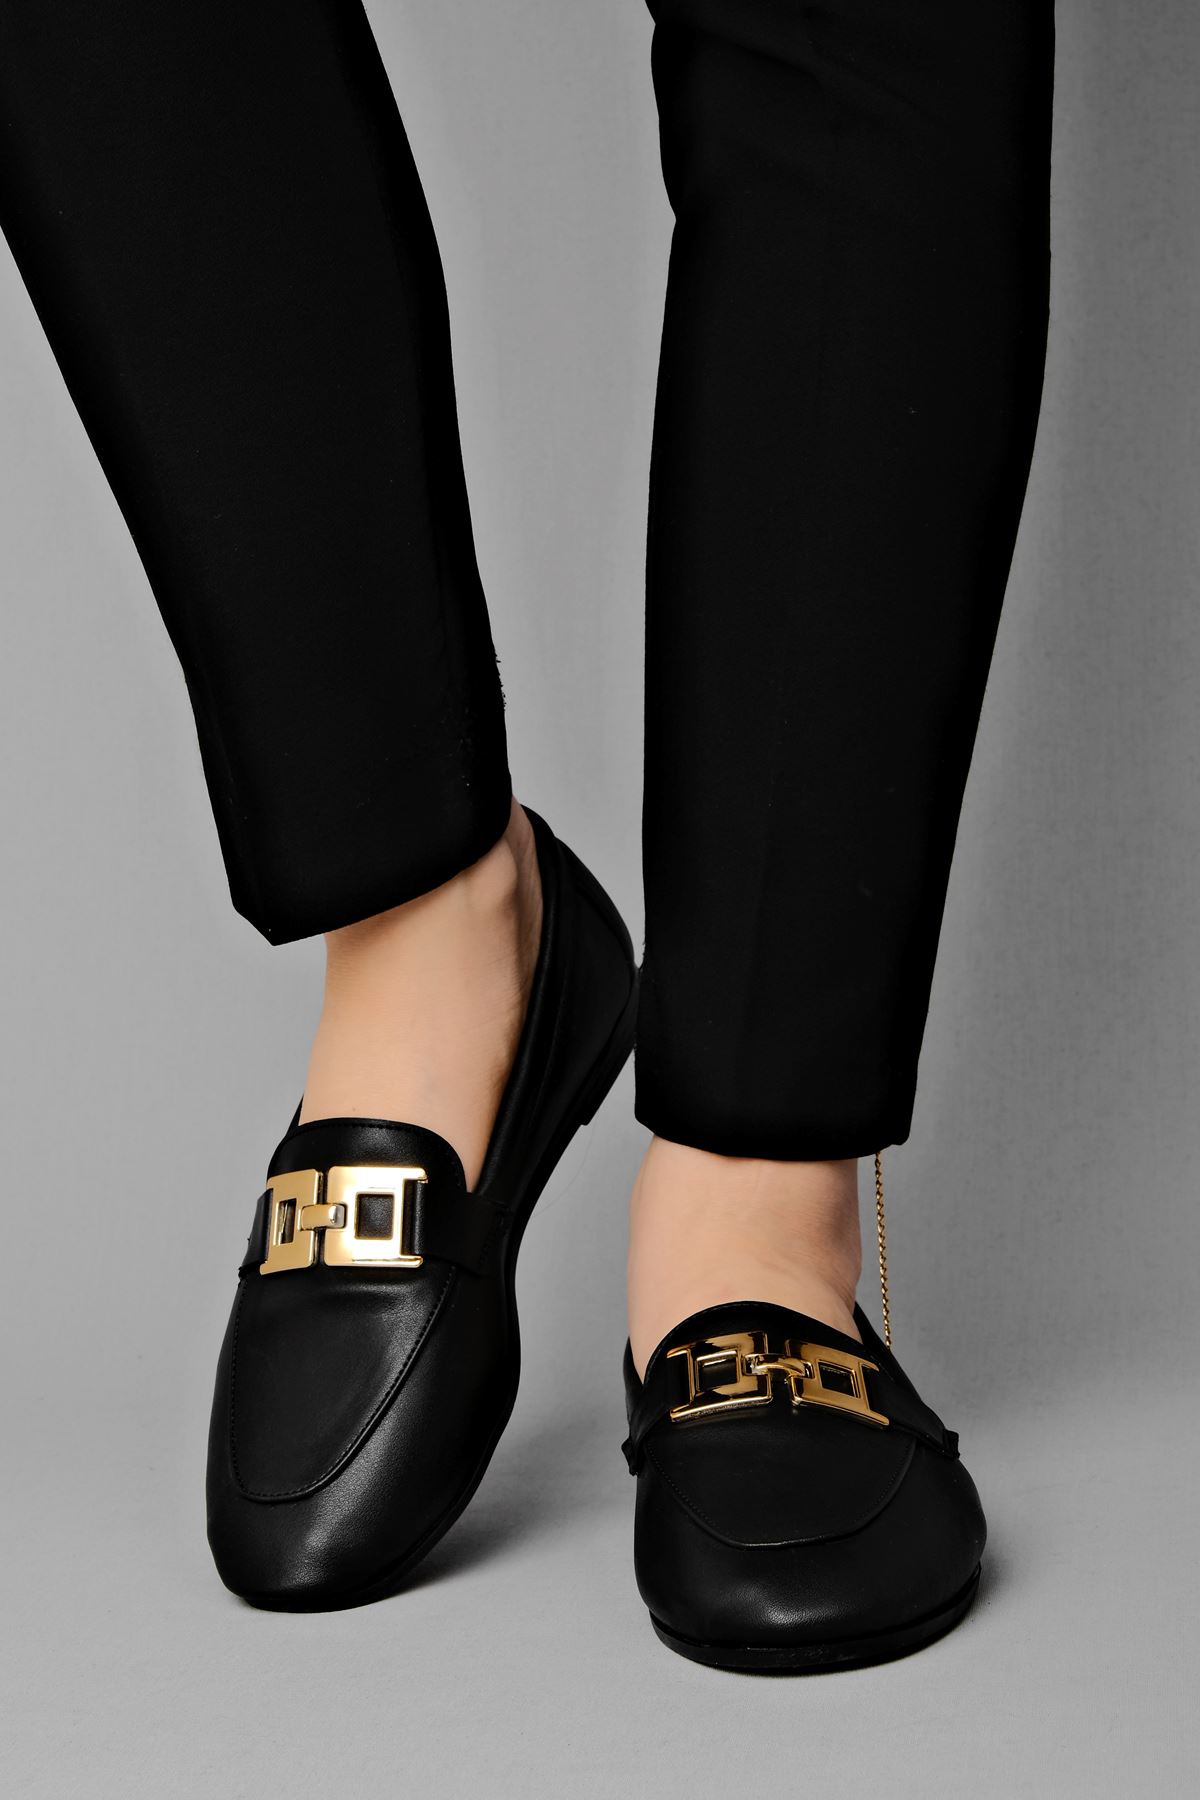 Benoda Kadın Babet Gold Tokalı-siyah - Kadın Ayakkabının Tek Adresi -  Lalshoes